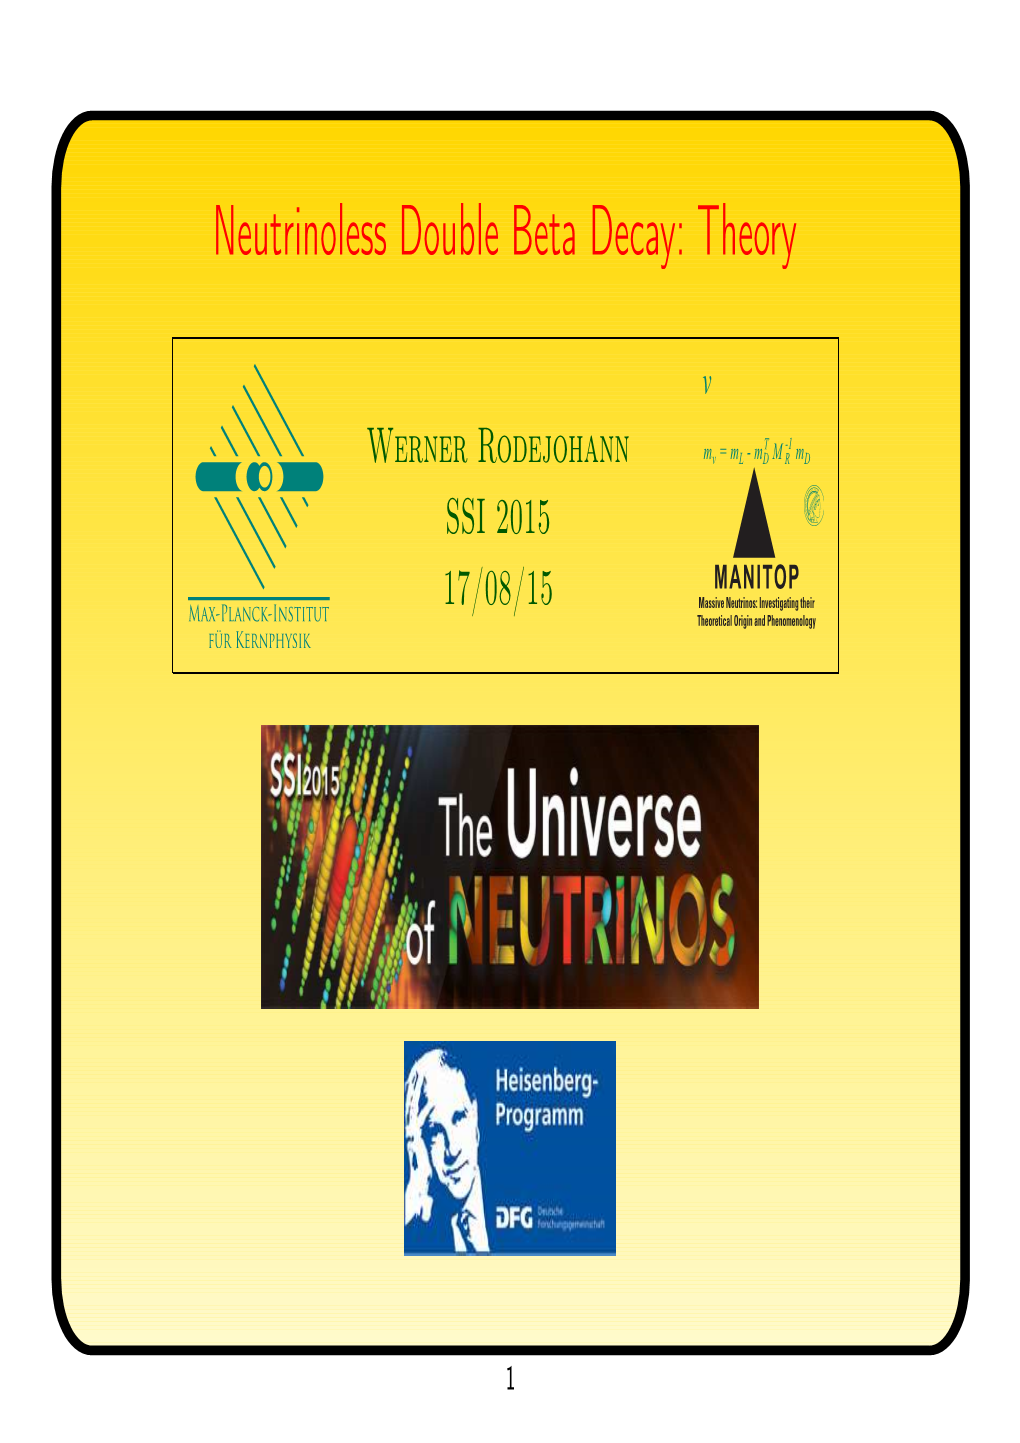 Neutrinoless Double Beta Decay: Theory